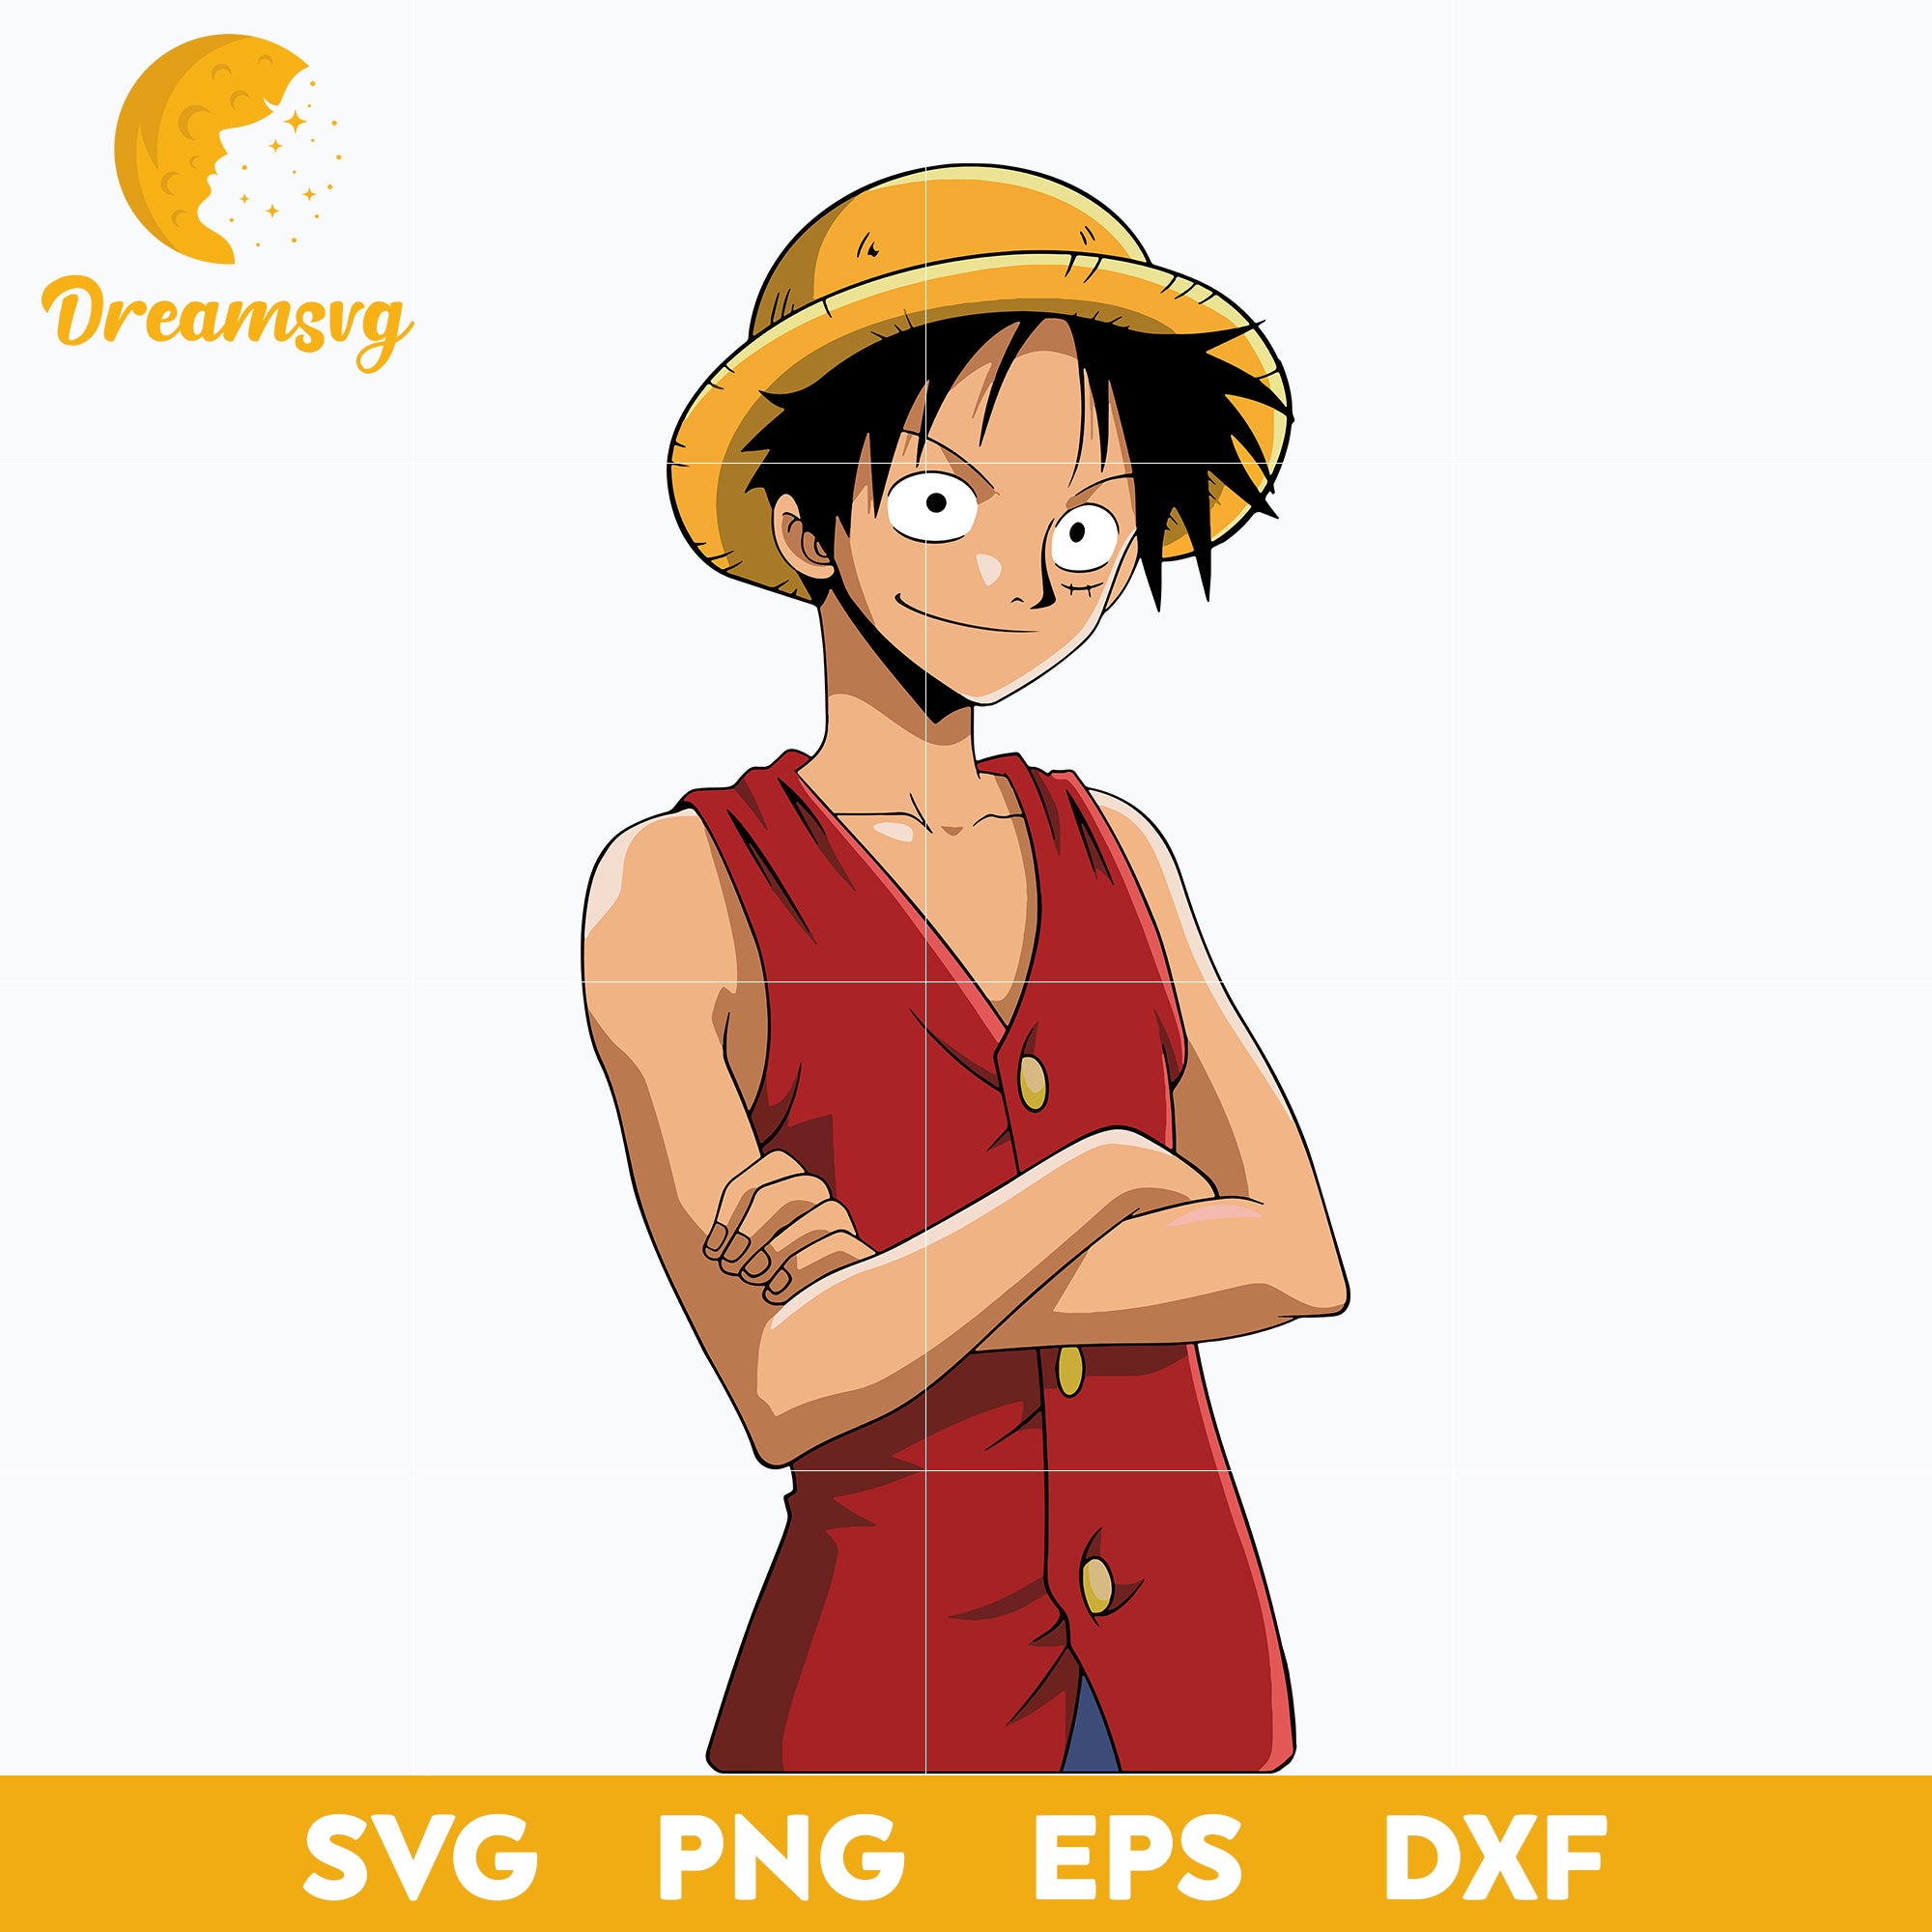 One Piece Svg, Luffy One Piece Svg, Luffy Svg, One Piece Anime Svg, Anime  Gift Svg, Anime Svg, png, eps, dxf digital download.